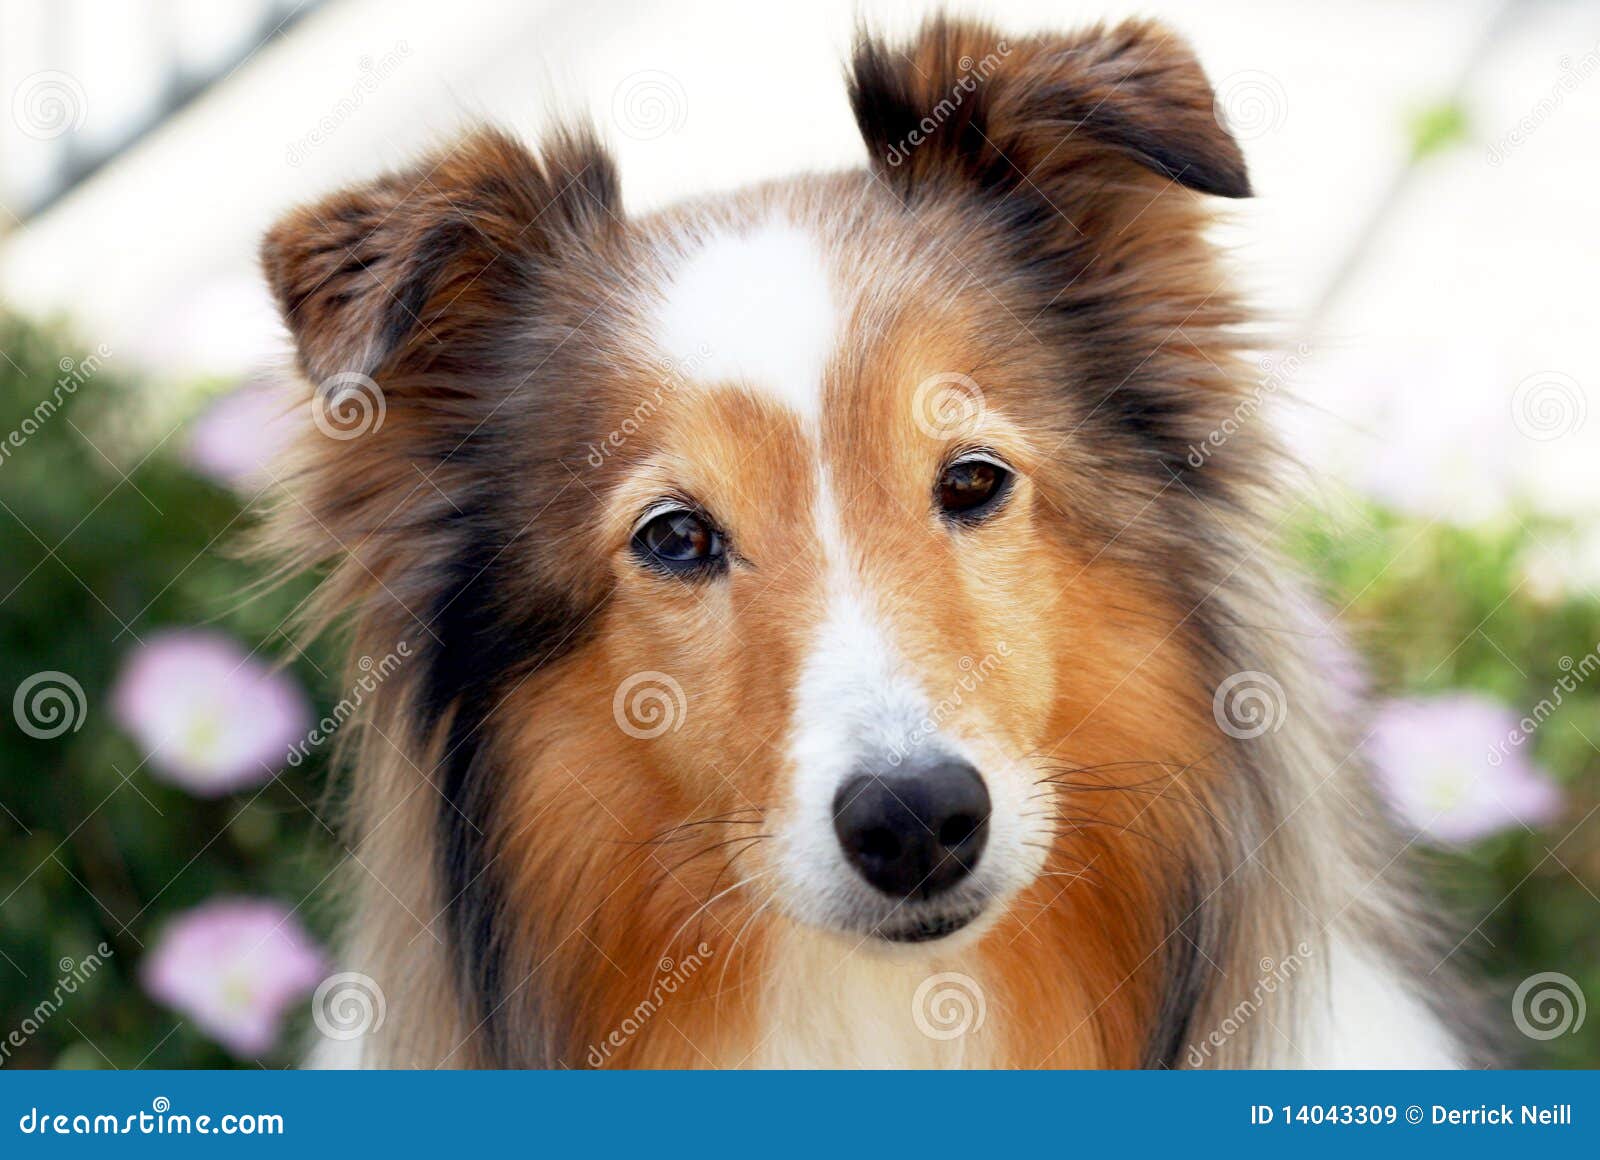 a portrait of a sable shetland sheepdog